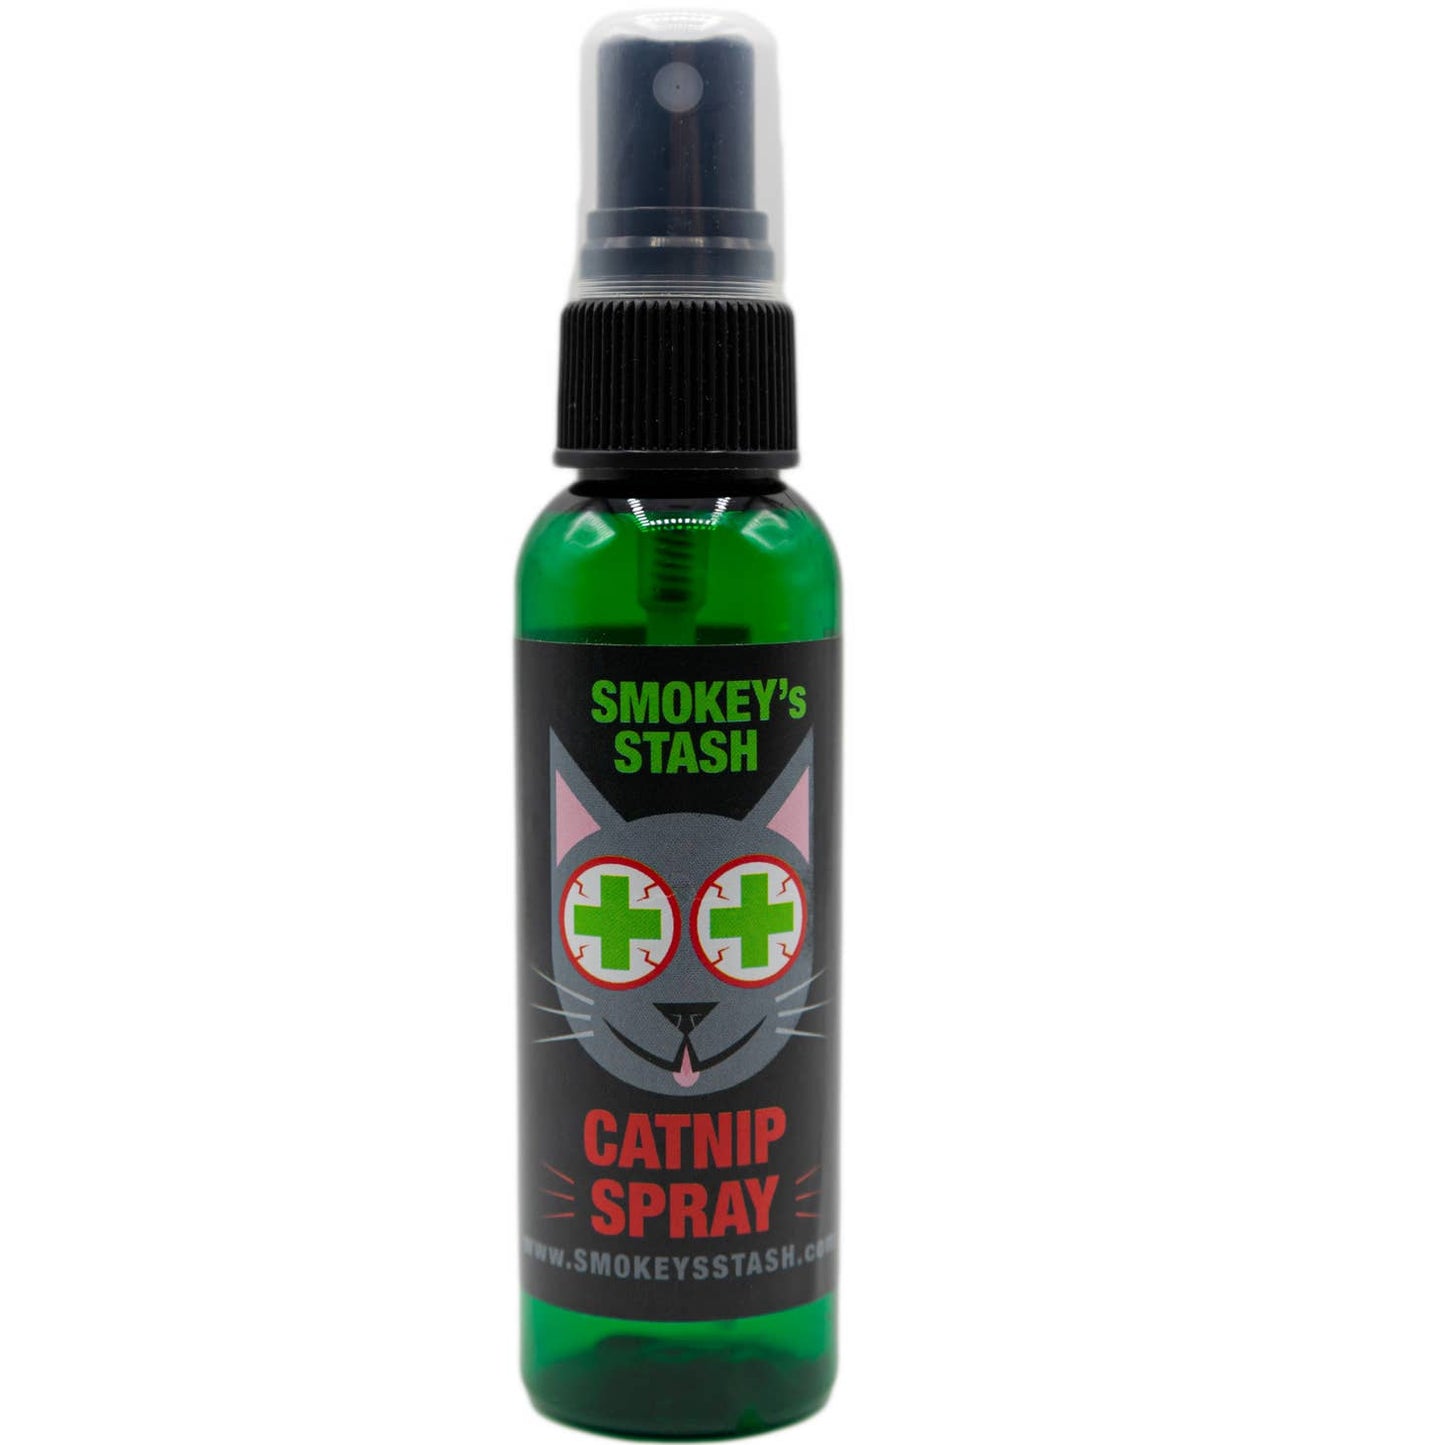 Smokey's Stash Catnip Spray (2oz Bottle)